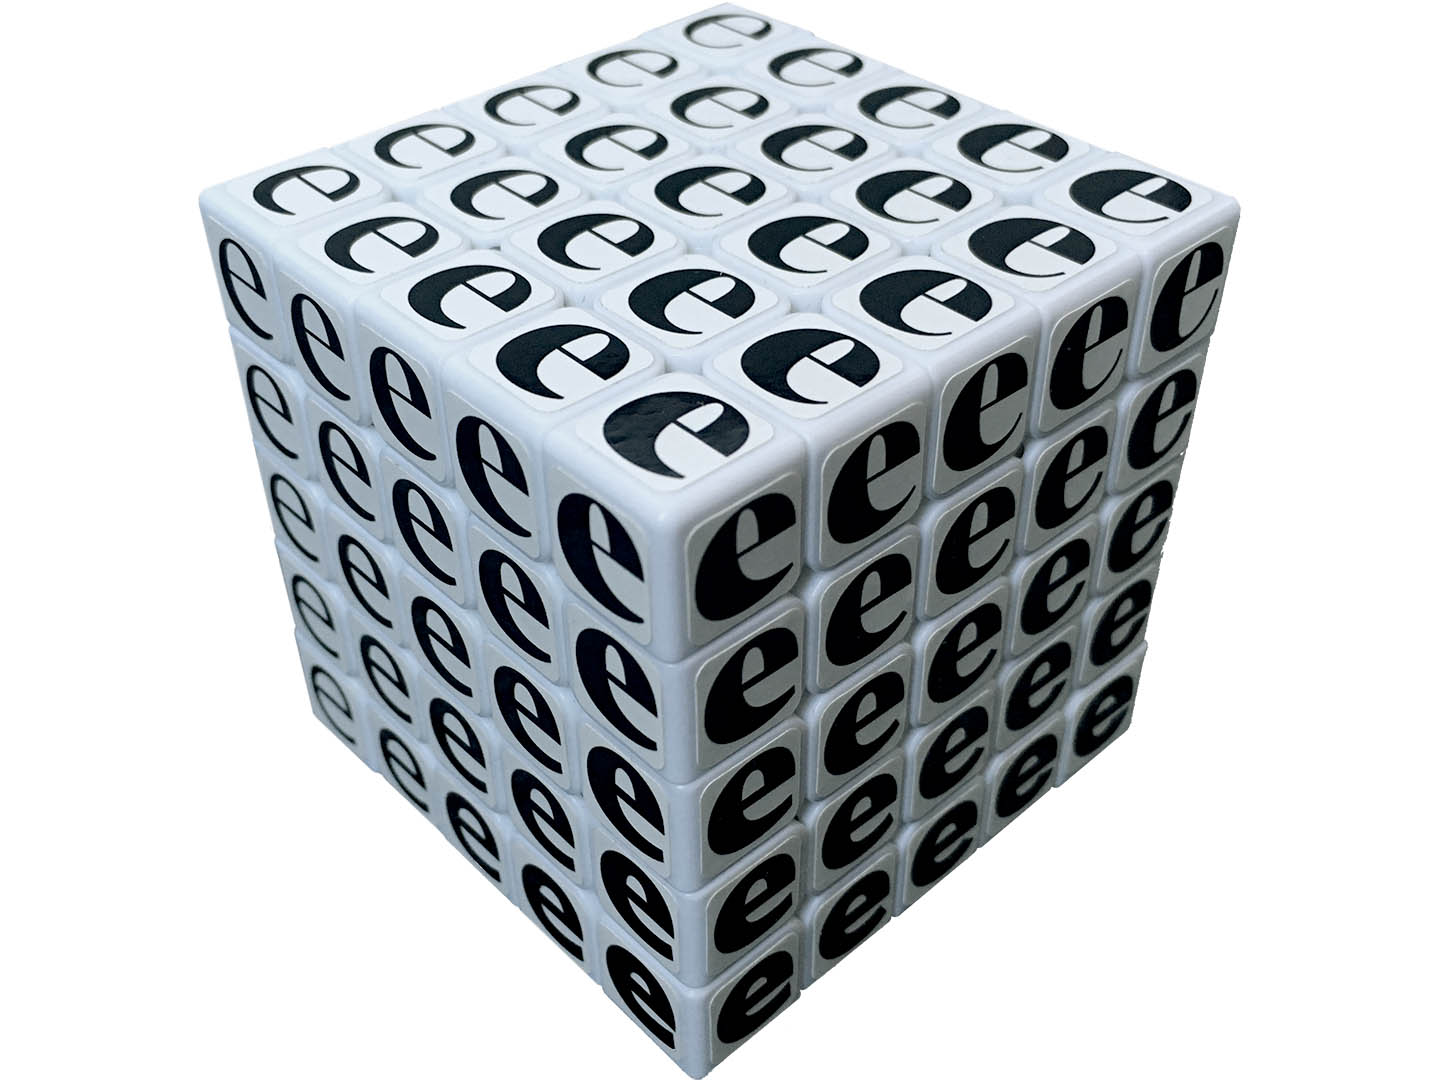 Rubik’s Noordzij Cubes